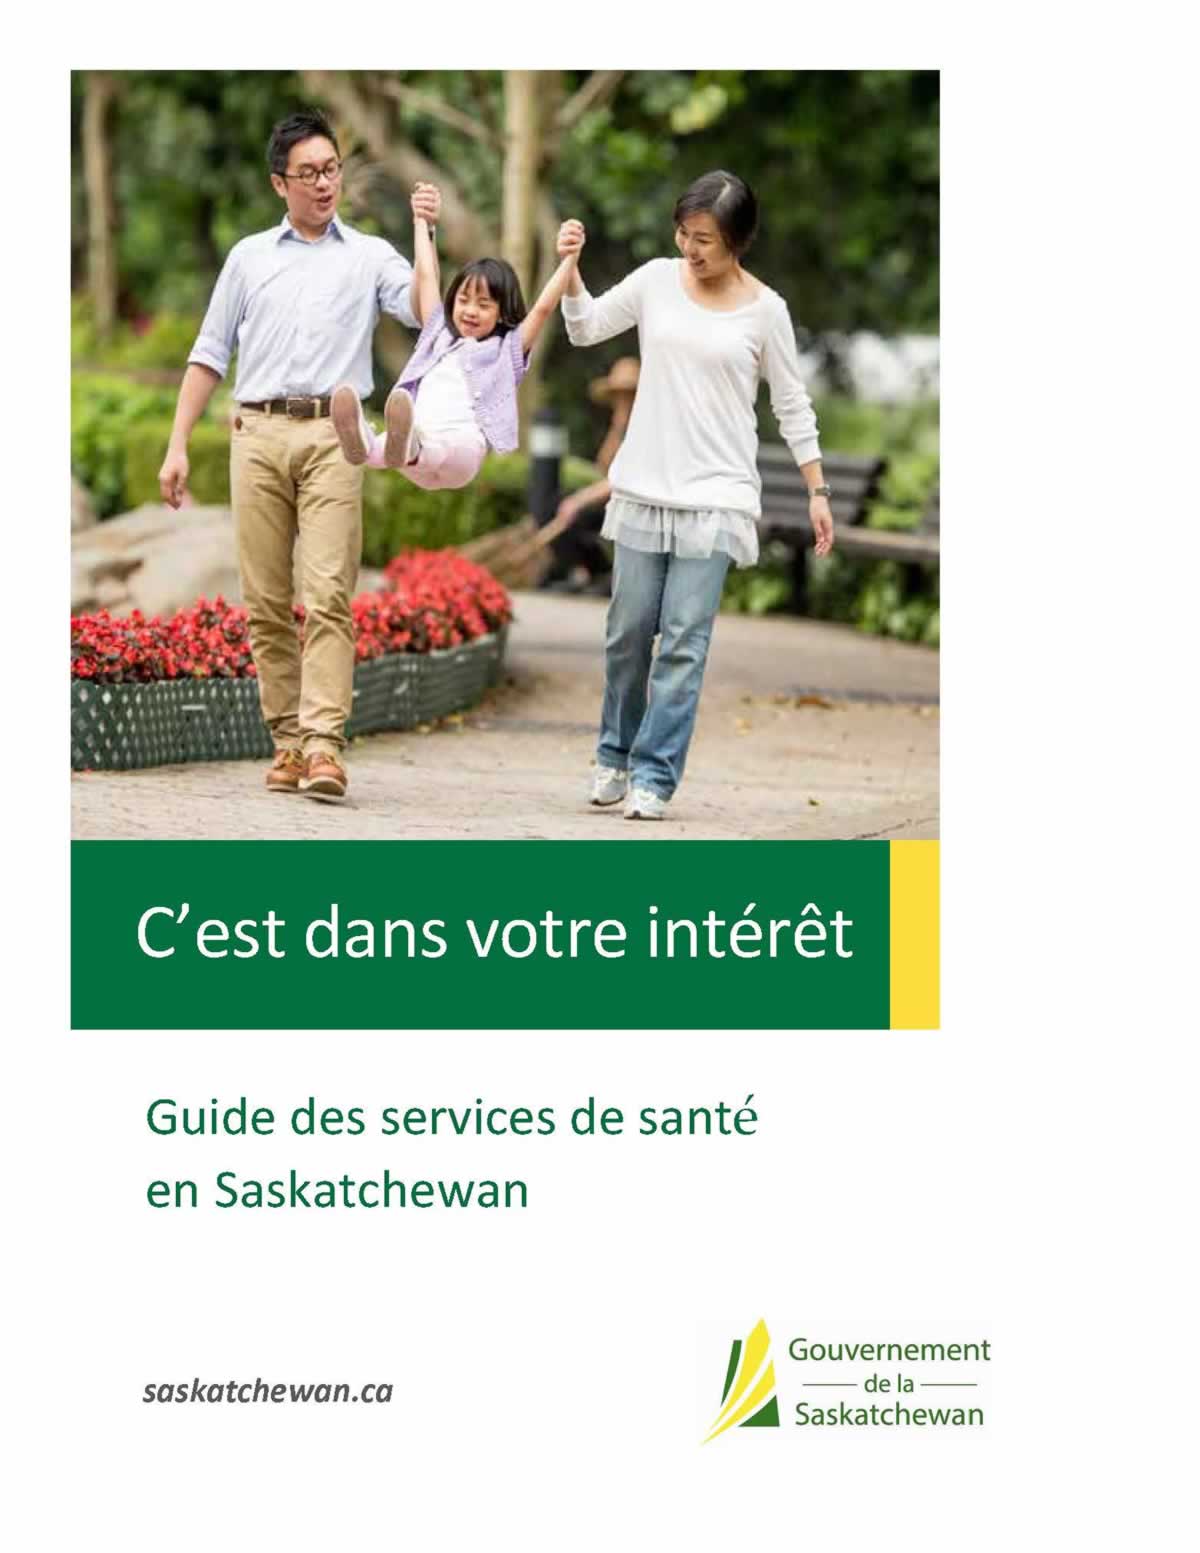 Guide du gouvernement de la Saskatchewan sur les soins de santé